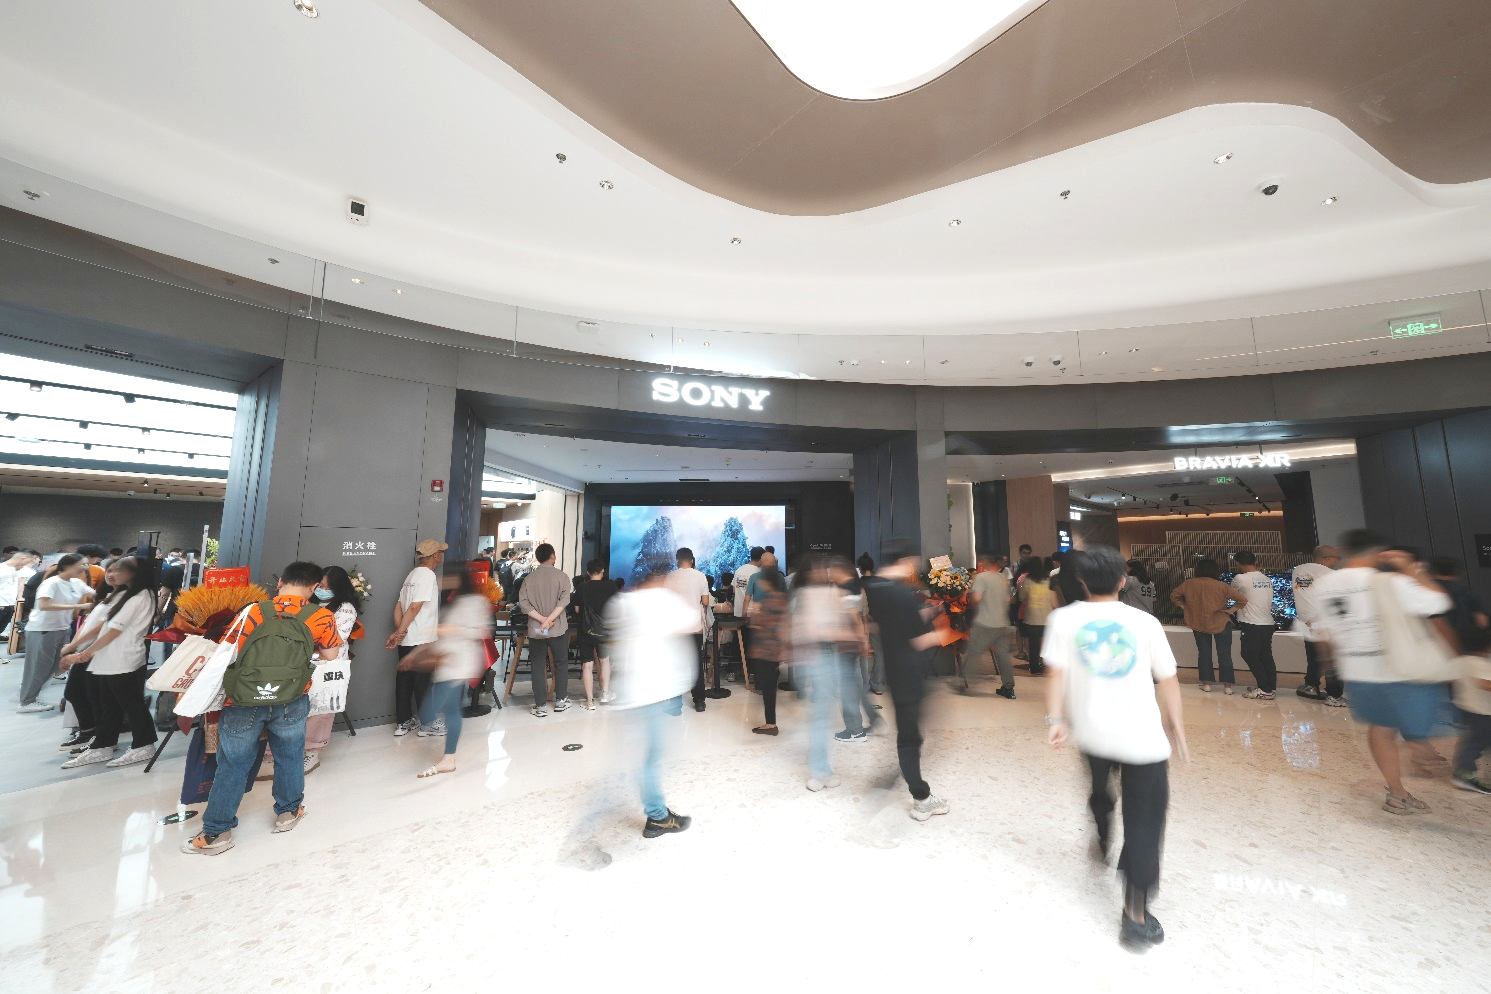 Sony Style索尼销售体验店现场图片_科技_腾讯网